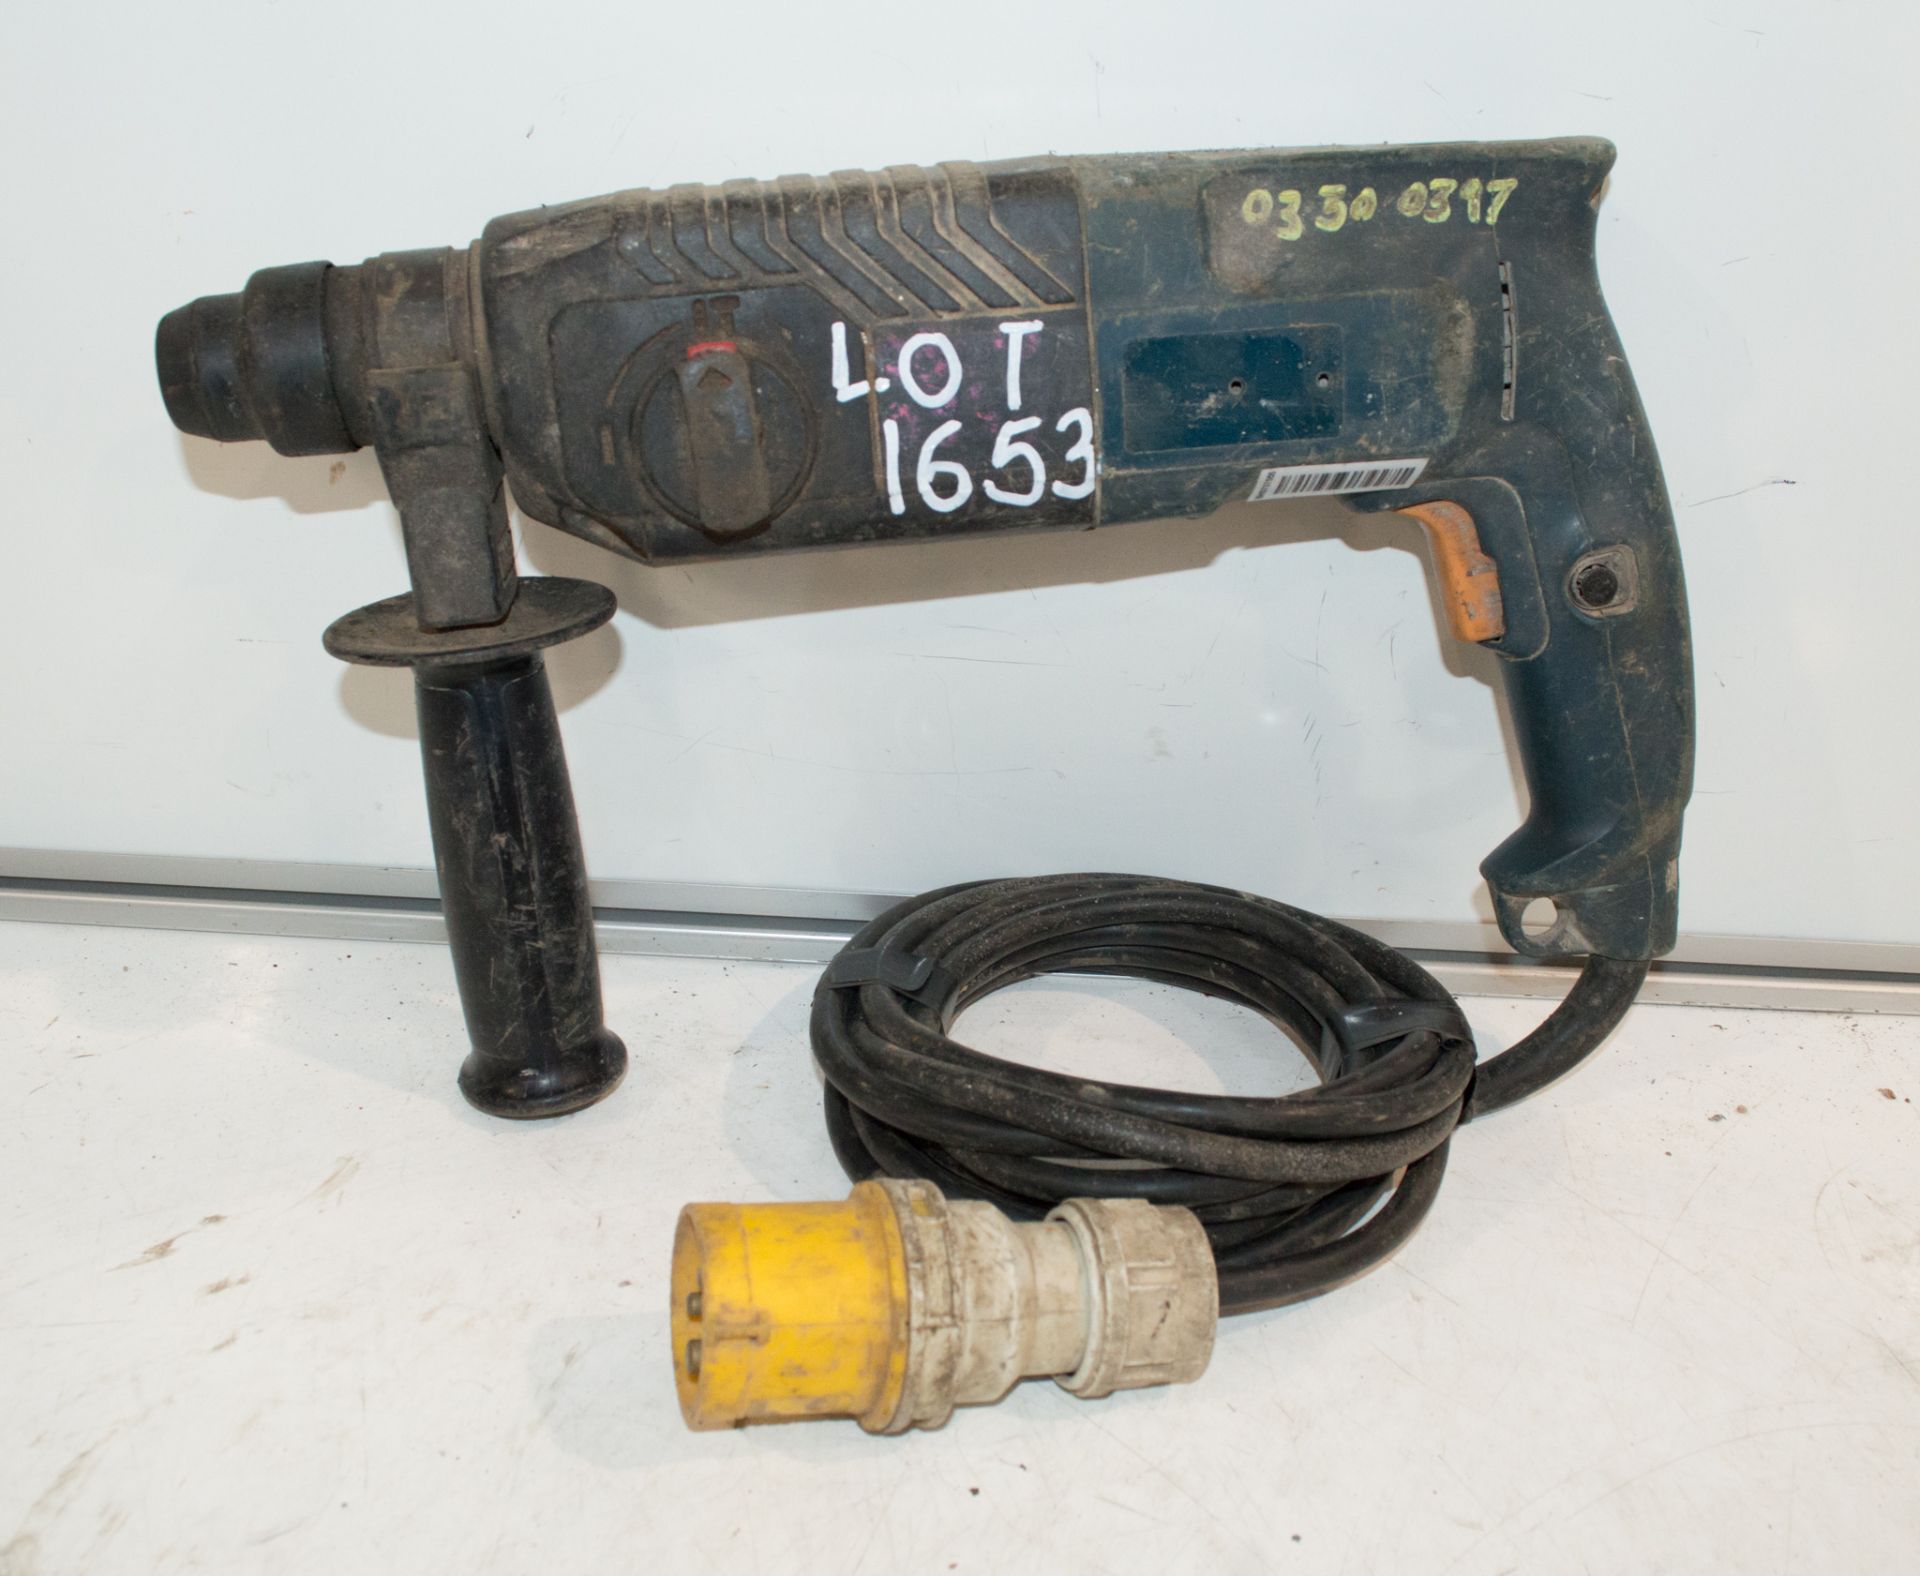 Bosch 110v SDS rotary hammer drill 033A0397